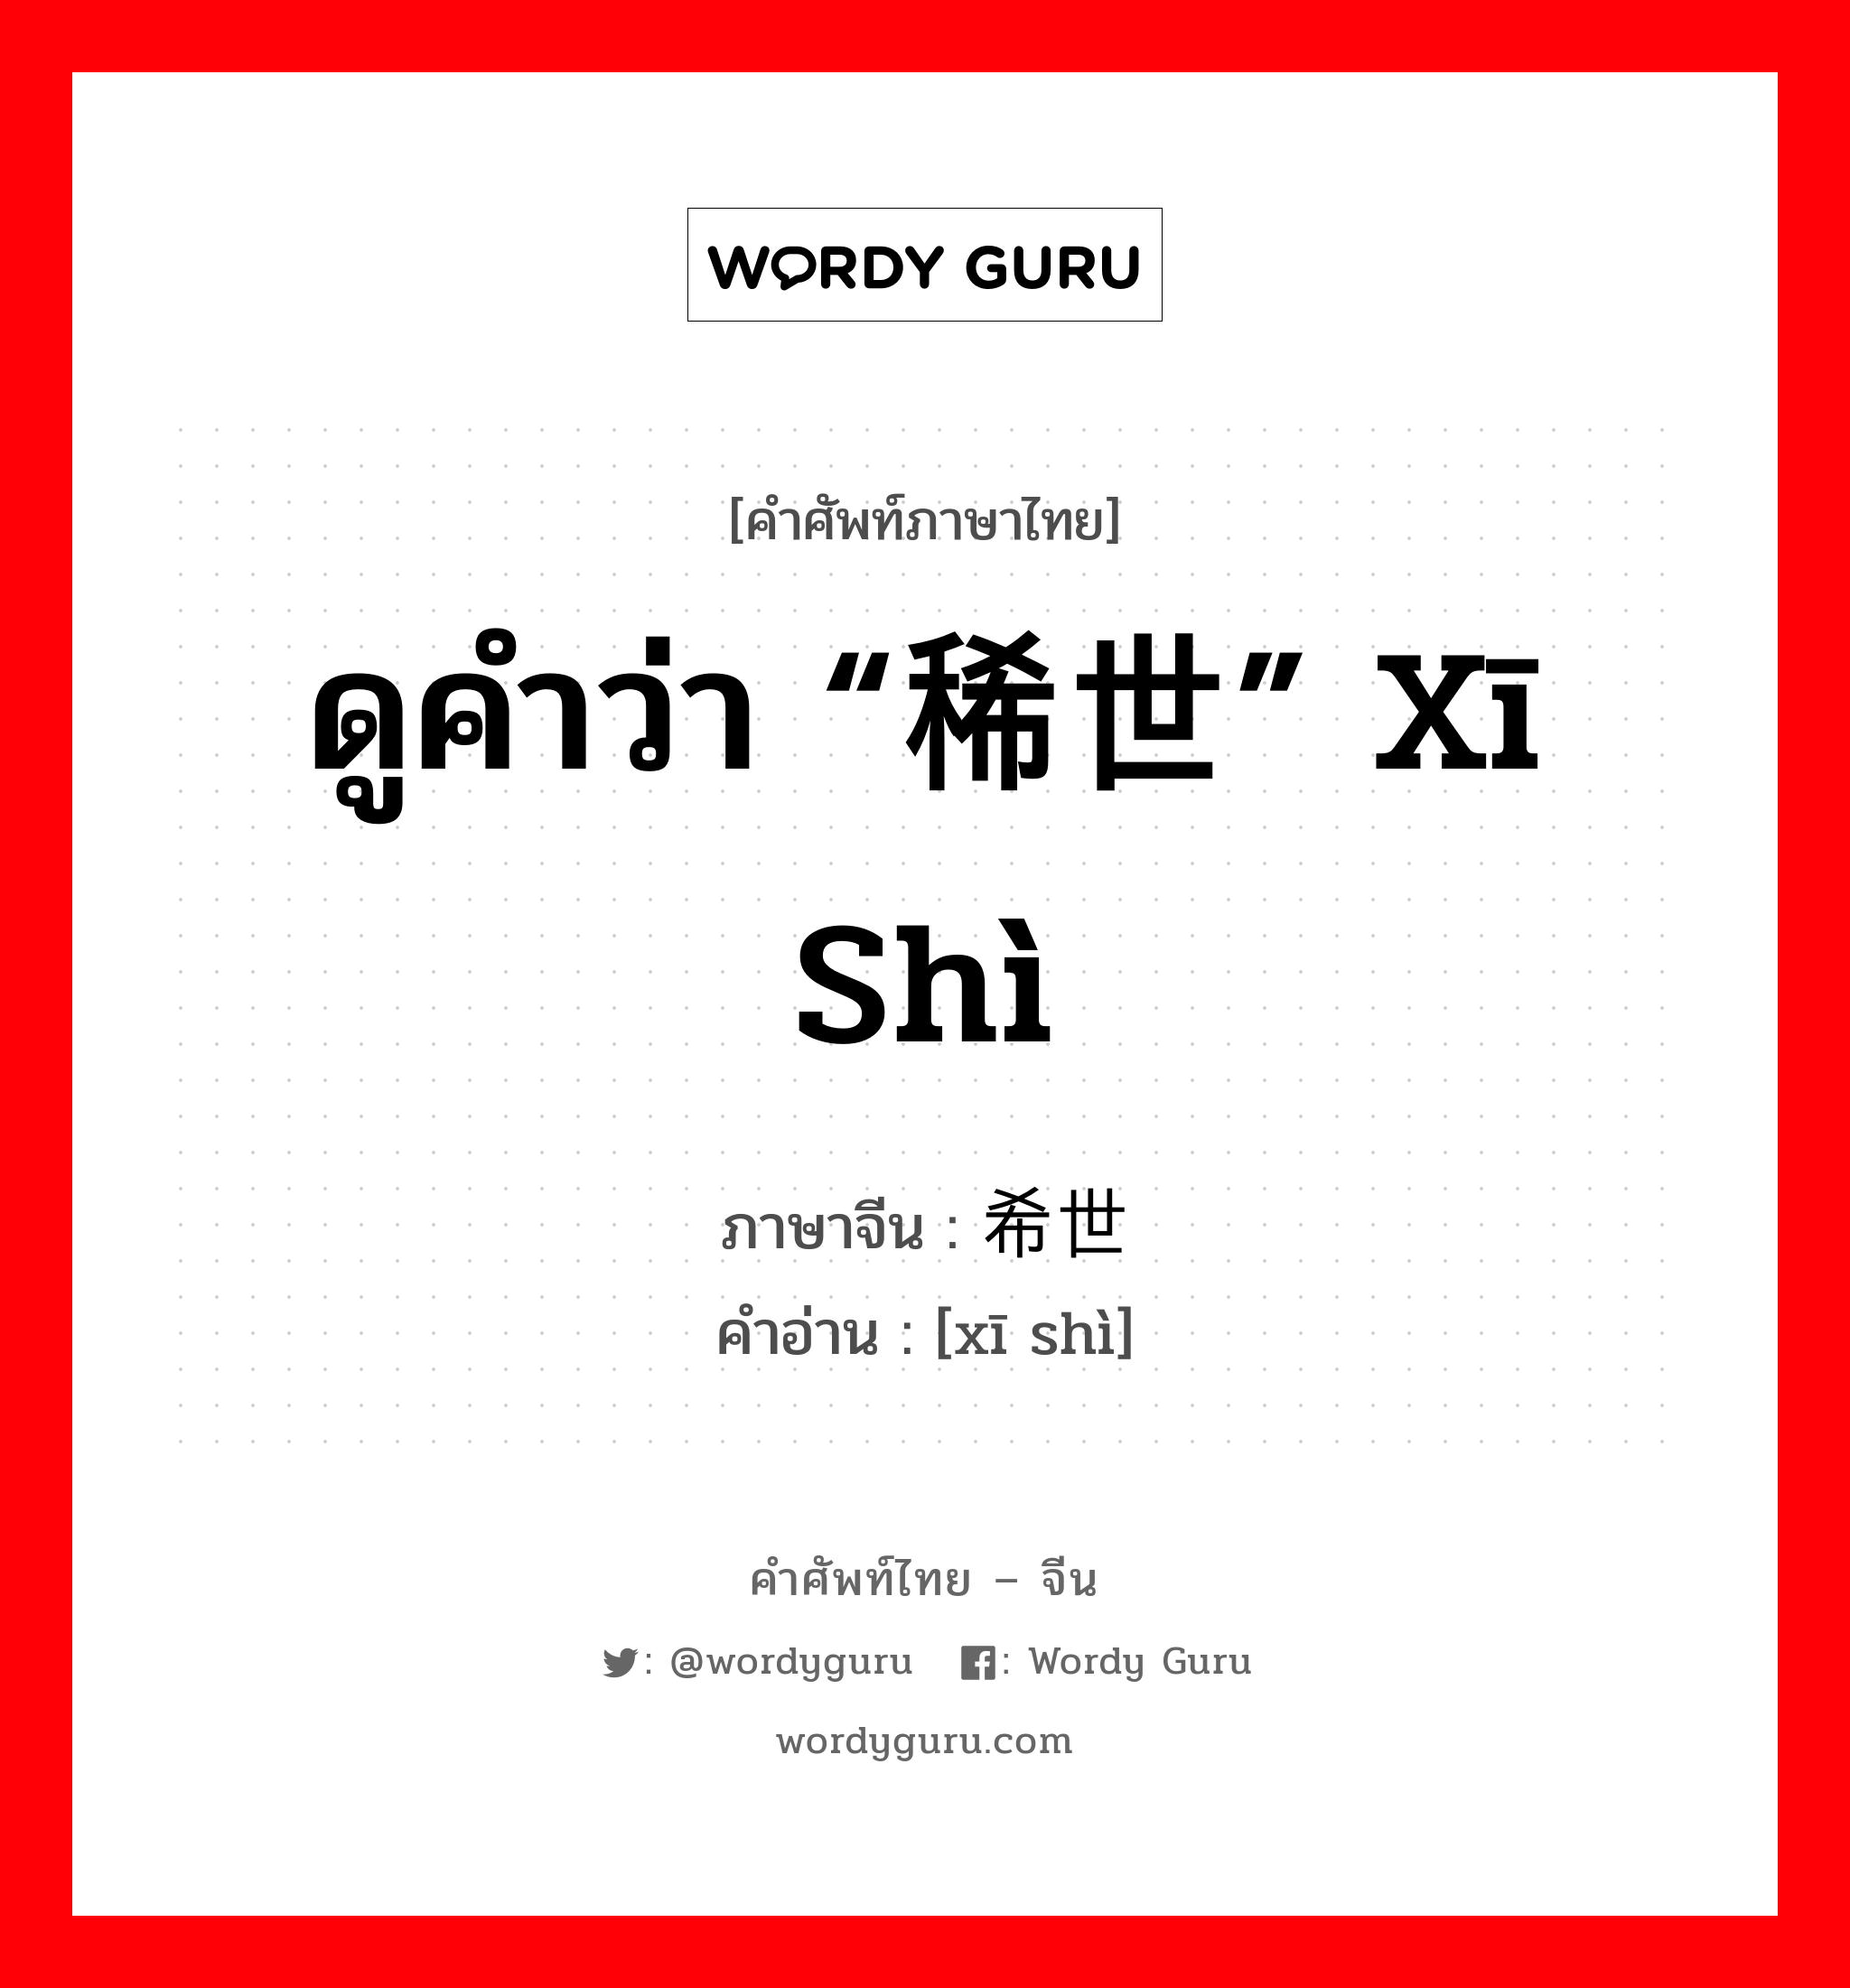 ดูคำว่า “稀世” xī shì ภาษาจีนคืออะไร, คำศัพท์ภาษาไทย - จีน ดูคำว่า “稀世” xī shì ภาษาจีน 希世 คำอ่าน [xī shì]